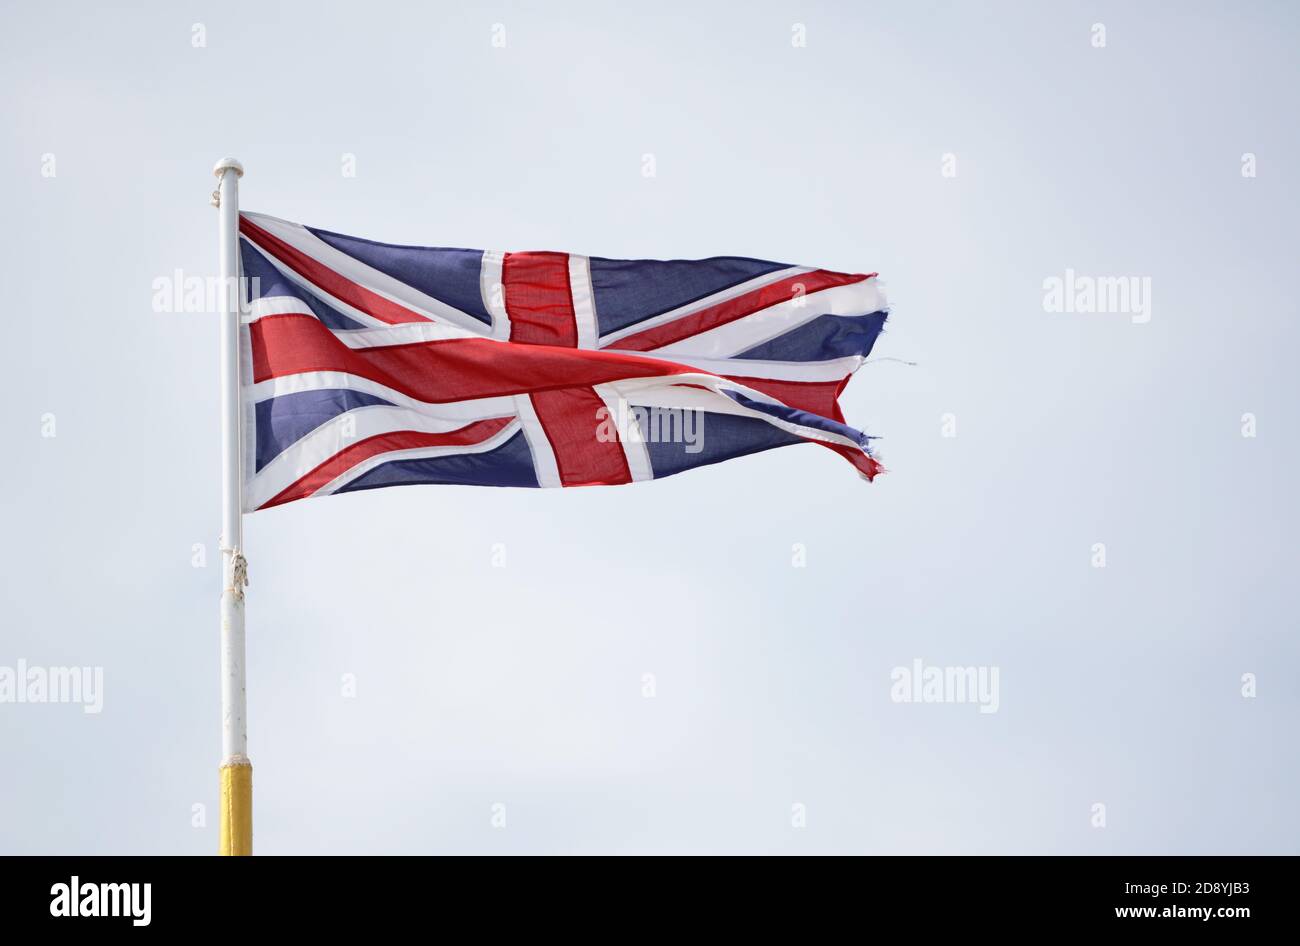 Bandiera di Union Jack che rappresenta Scozia, Galles, Irlanda del Nord e Inghilterra, vola contro un cielo azzurro Foto Stock